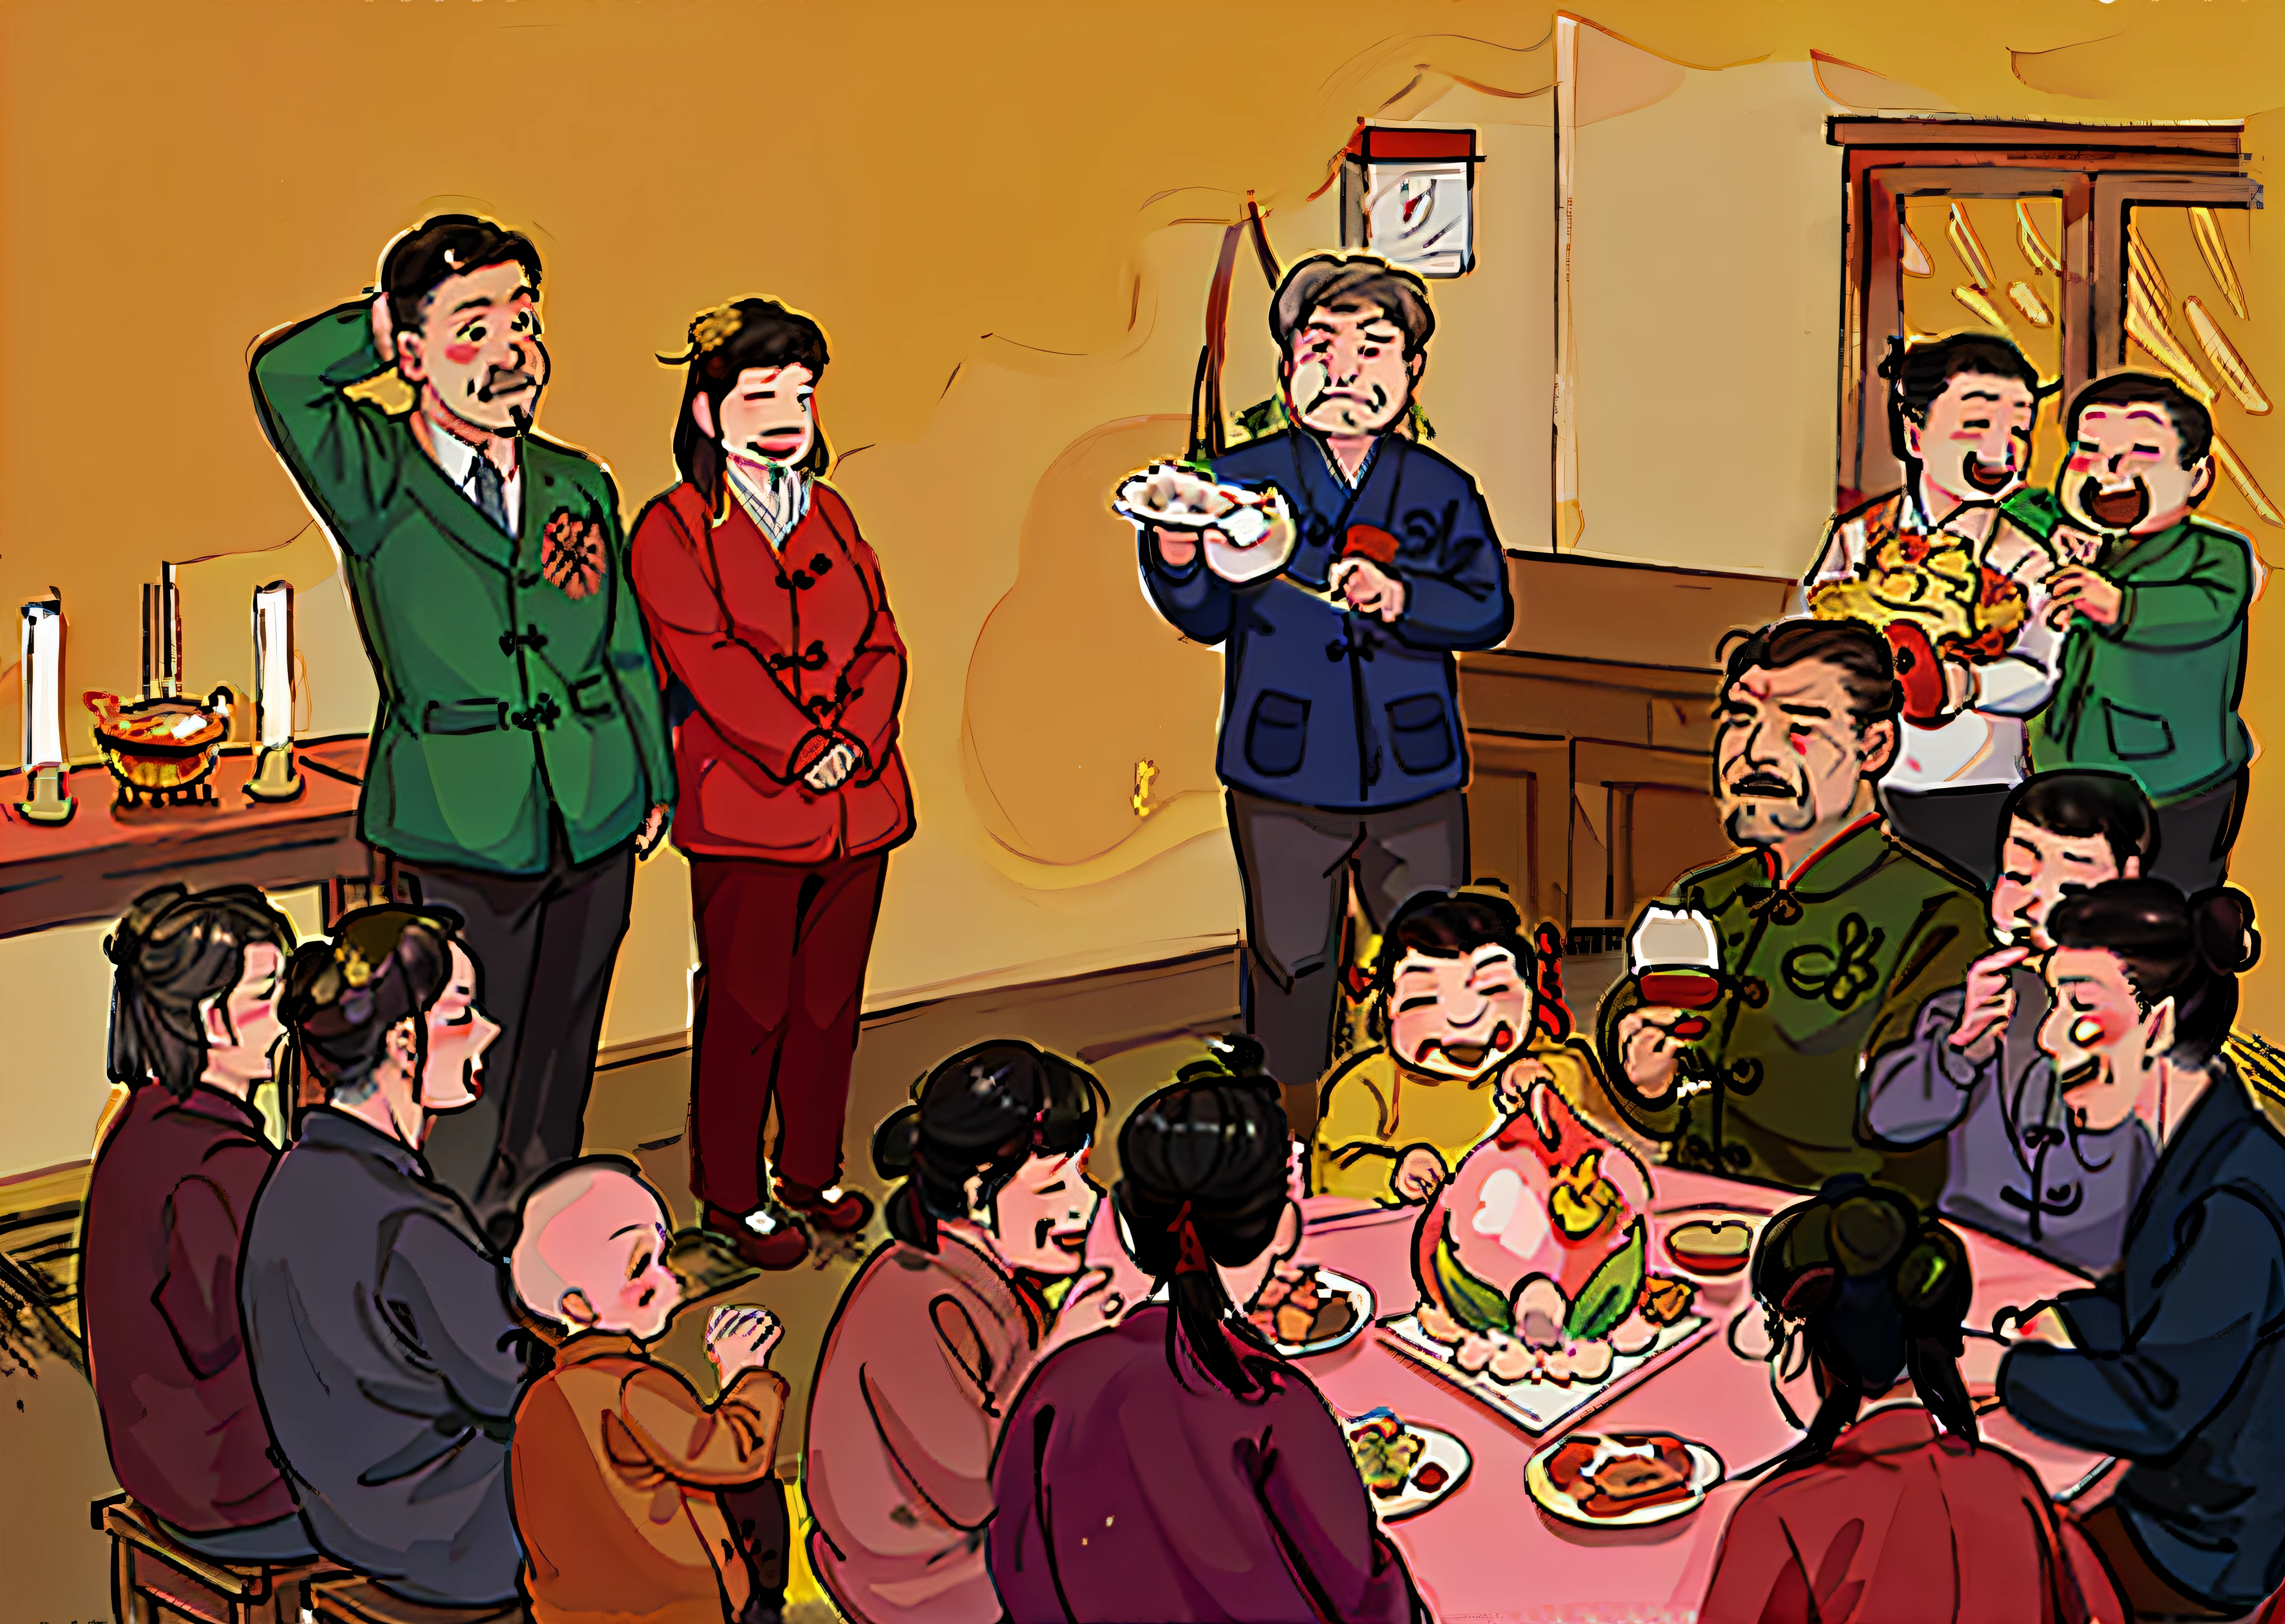 Há muitas pessoas sentadas ao redor de uma mesa comendo comida, estilo de arte gta chinatowon, Mapa De Tofu Dos Desenhos Animados, Xi Jinping como Ursinho Pooh, família dinner, estilo de arte do gta chinatown wars, por Sheng Mao Ye, por Li Tiefu, por Yi Inmun, estilo de arte gta chinatown, família, ilustração humorística, inspirado em Chen Daofu